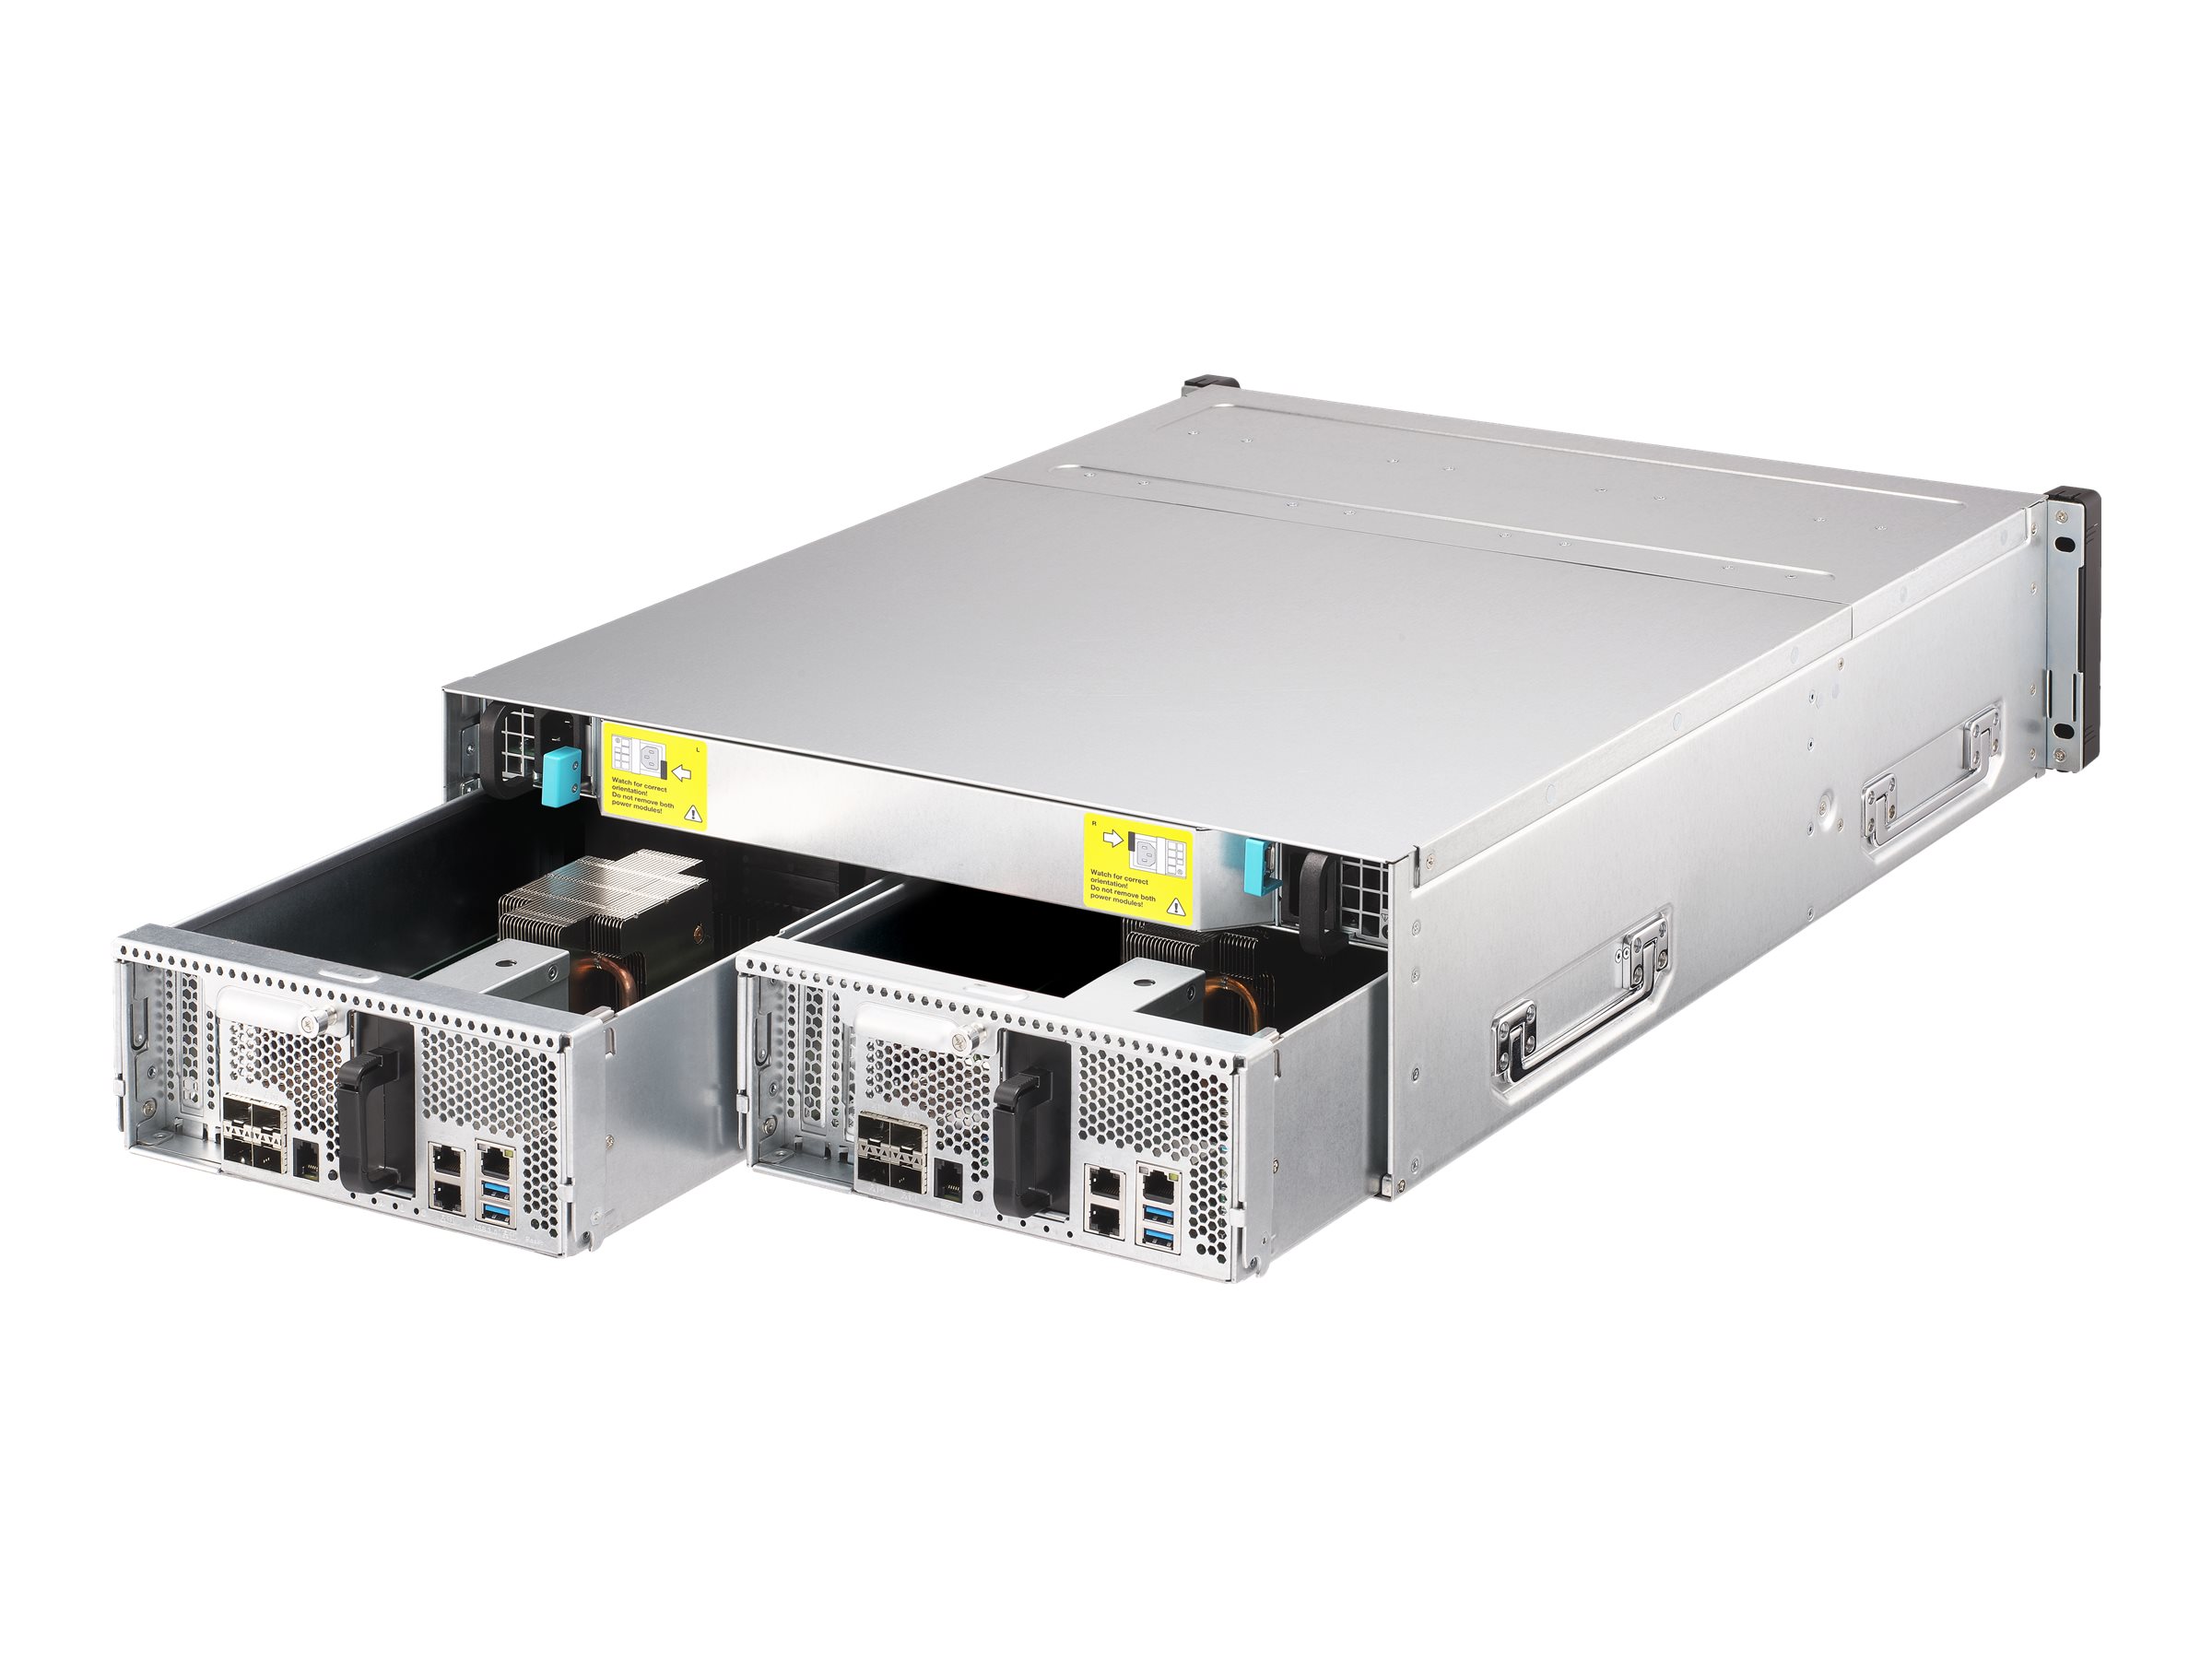 QNAP ES1686DC - NAS-Server - 16 Schächte - Rack - einbaufähig - SAS 12Gb/s - RAID RAID 0, 1, 5, 6, 10, JBOD, 5 Hot Spare, 6 Hot Spare, 10-Hot-Spare, 1 Hot-Spare - RAM 64 GB - Gigabit Ethernet / 10 Gigabit Ethernet - iSCSI Support - 3U